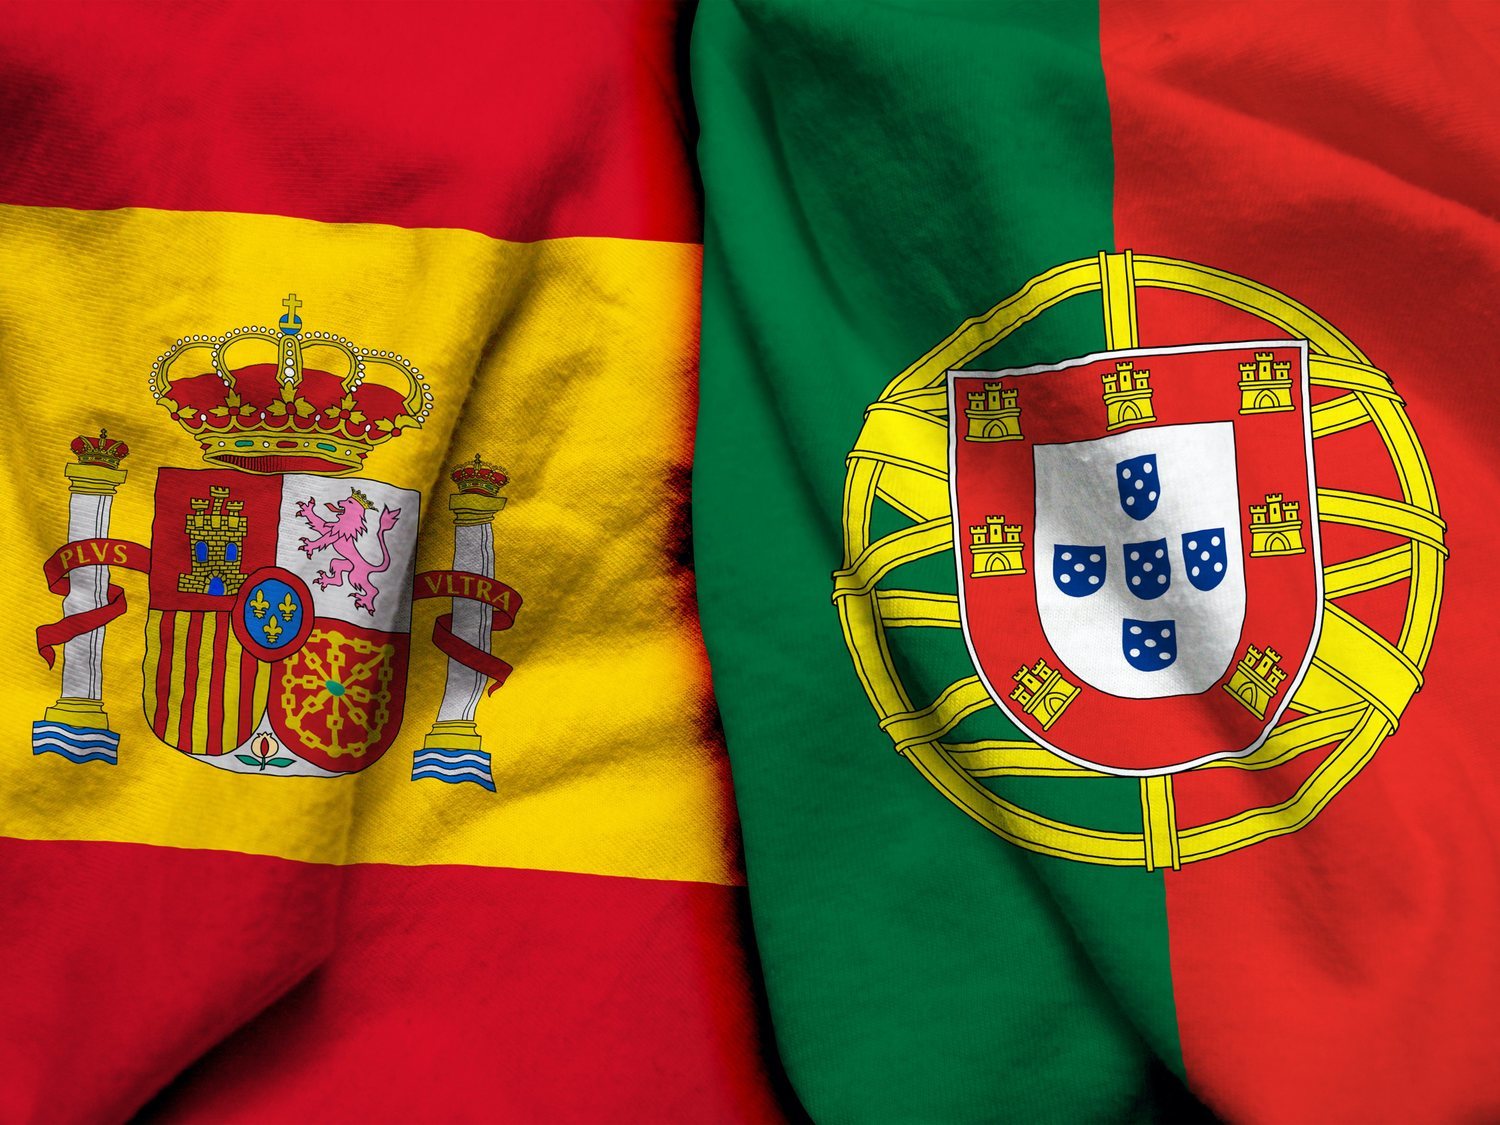 El alcalde de Oporto apuesta por la unión de España y Portugal: Iberolux